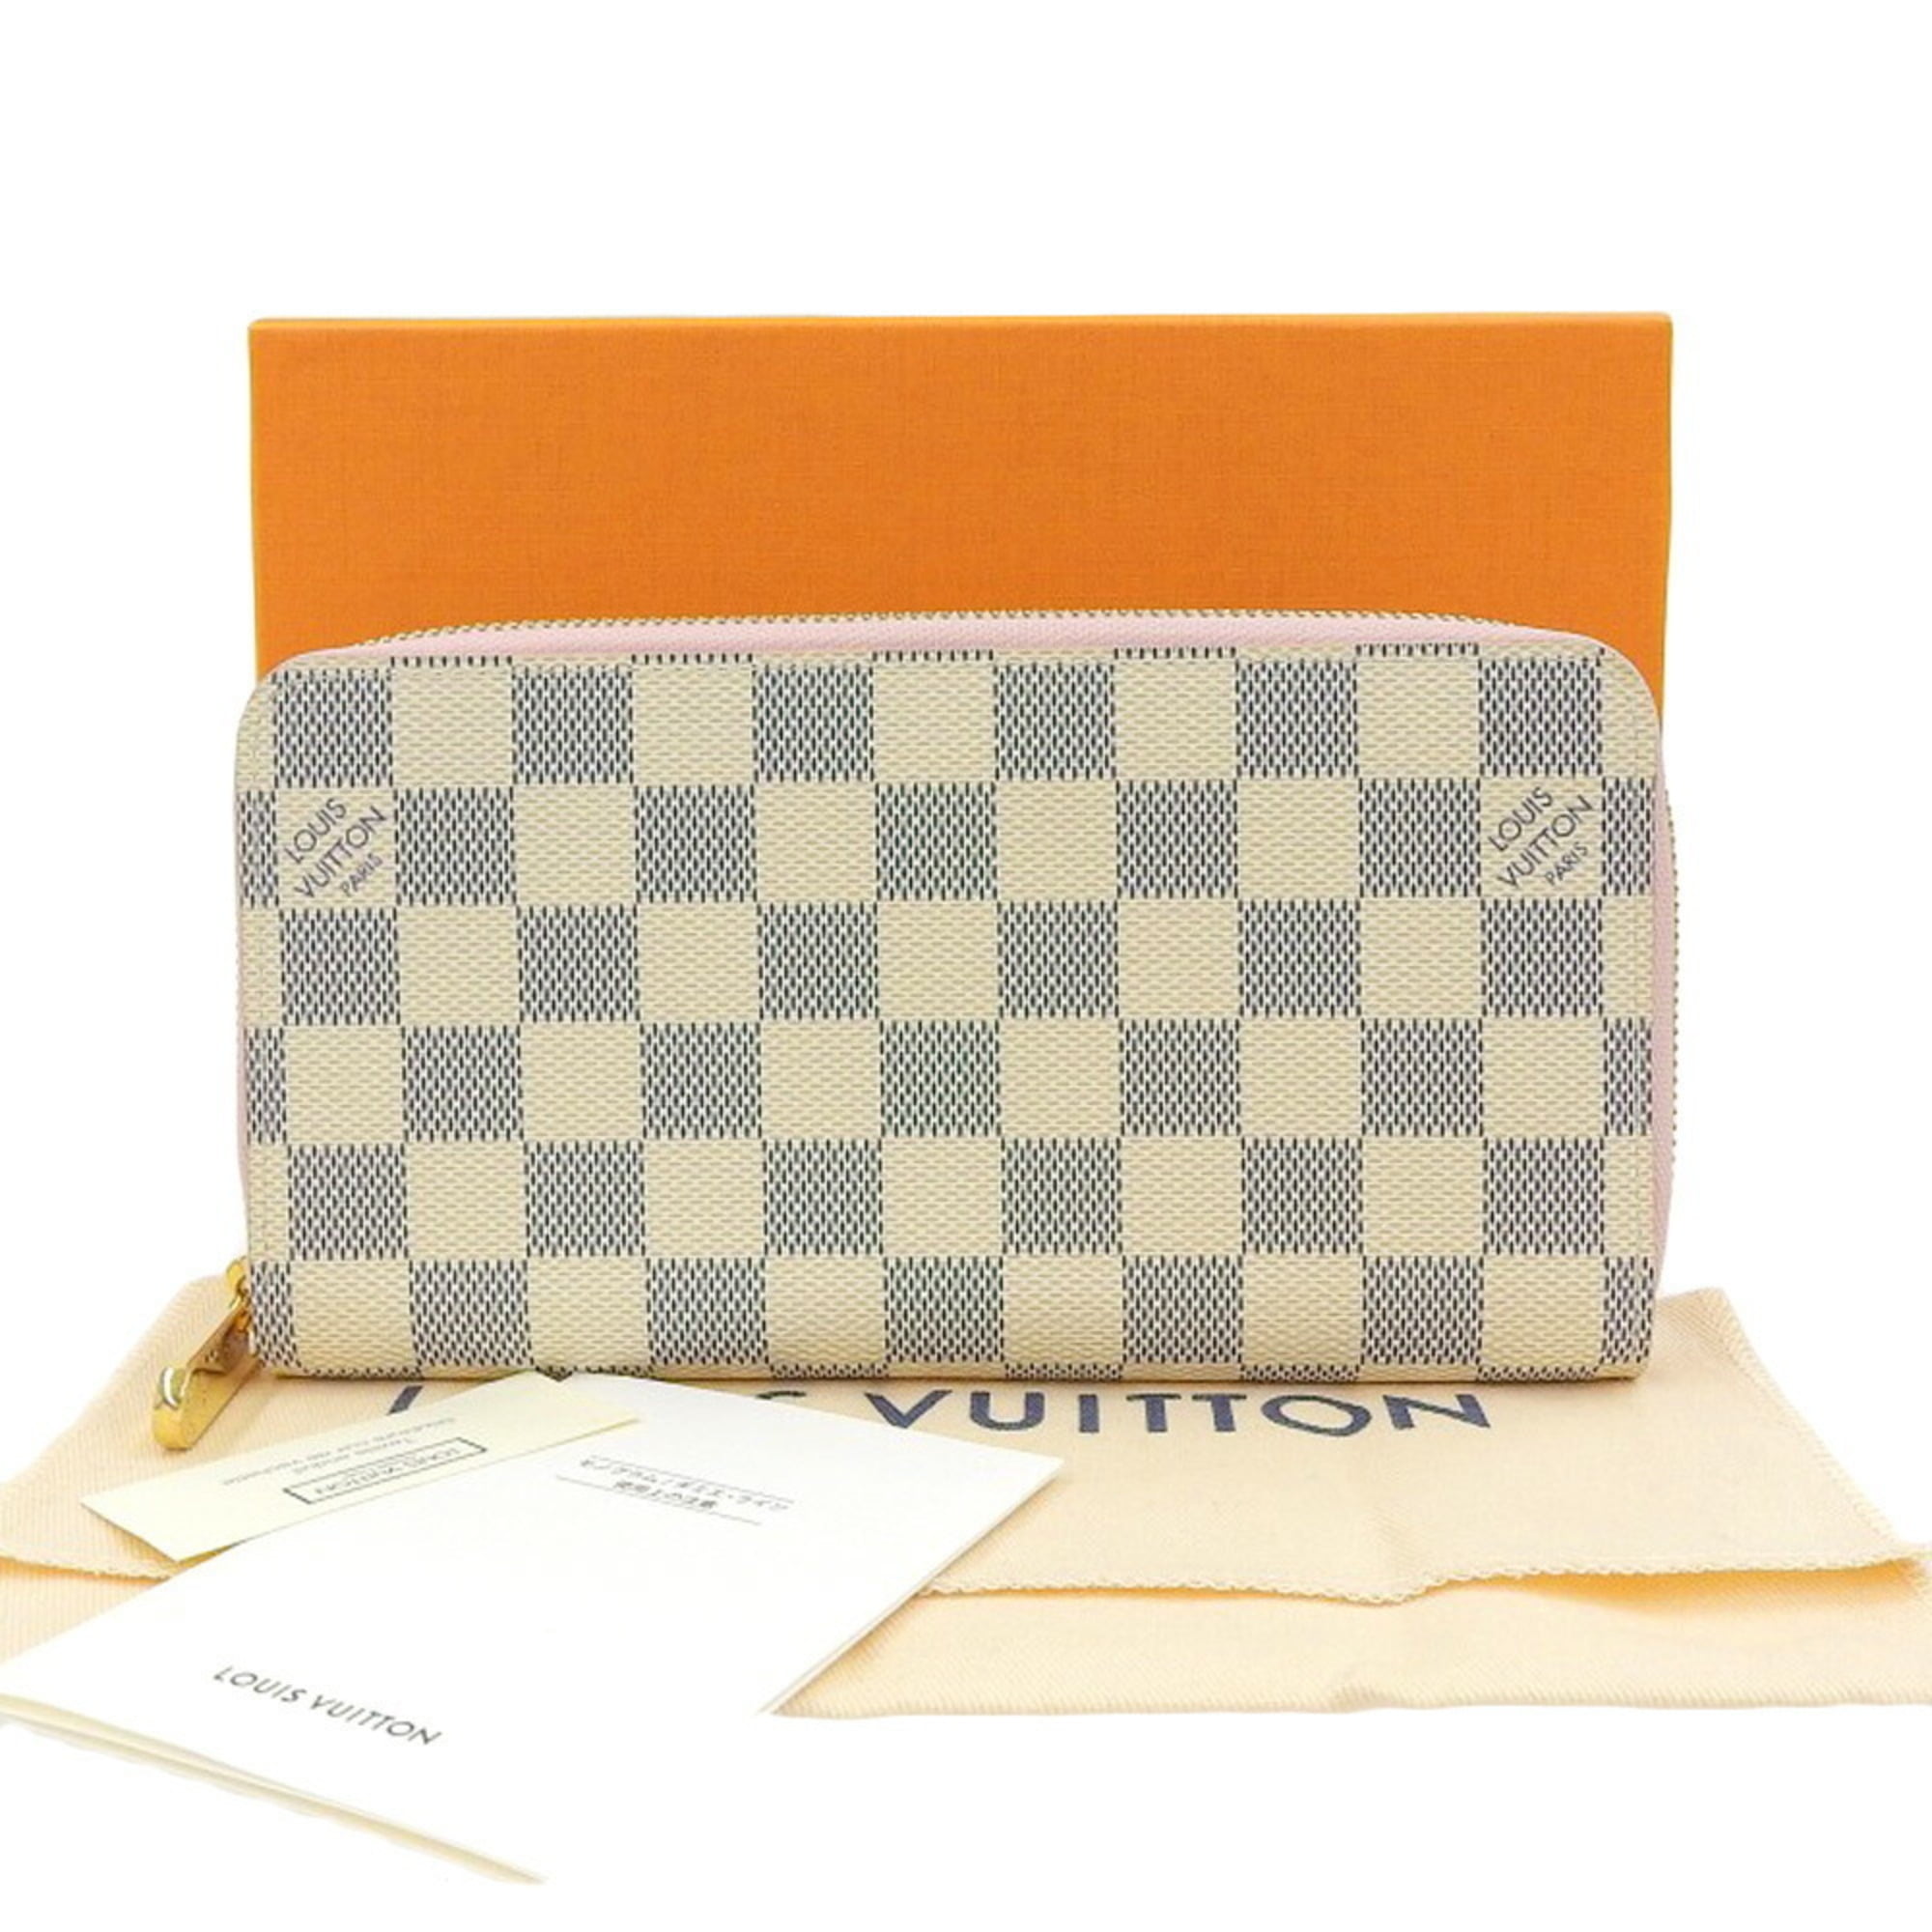 Authenticated used Louis Vuitton Louis Vuitton Damier Azur Zippy Wallet Round Zipper Long Pink N63503, Adult Unisex, Size: (HxWxD): 10cm x 19.5cm x